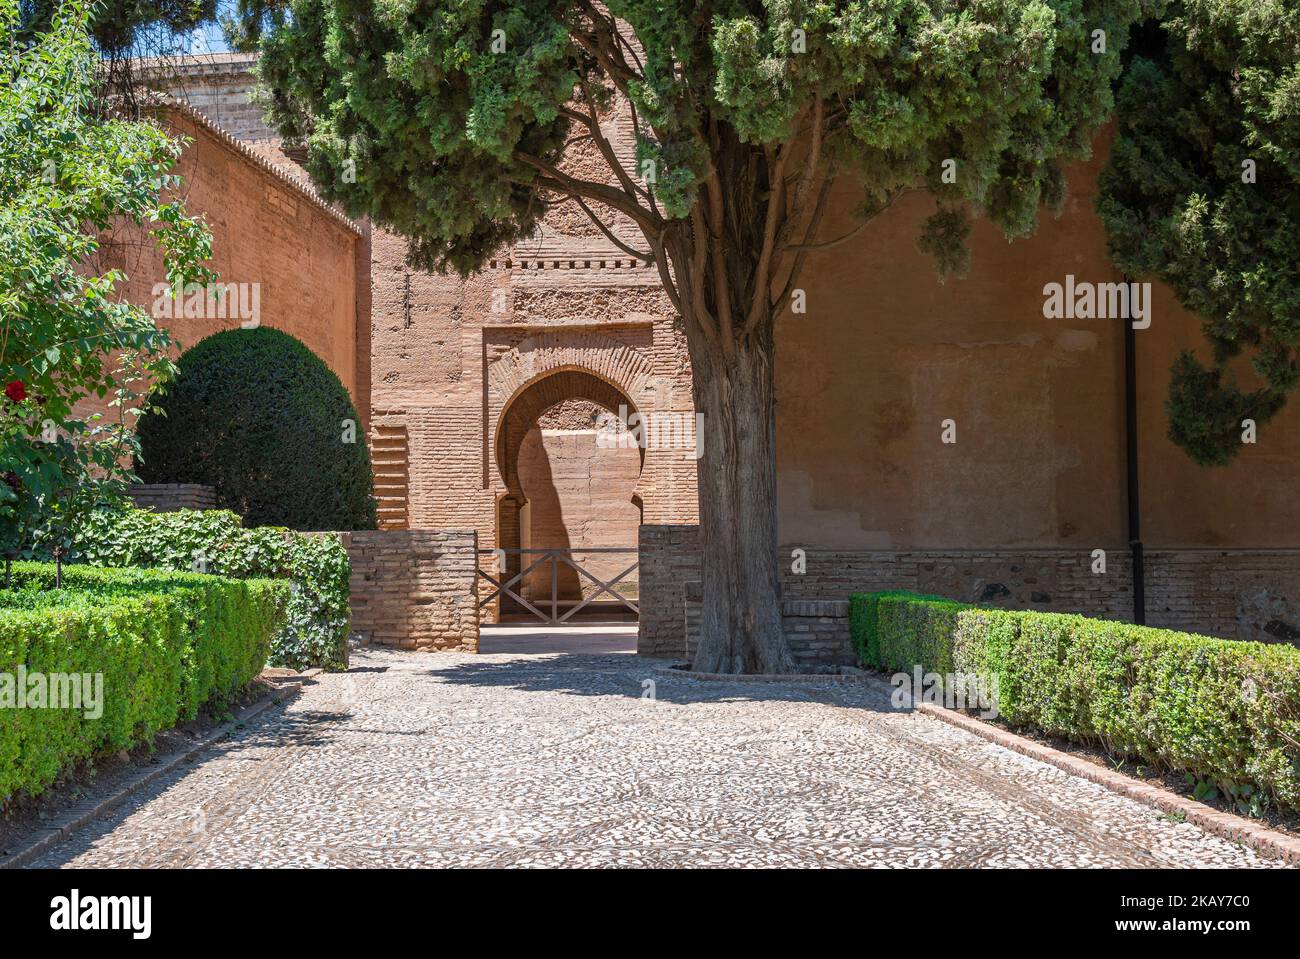 Puerta, patio y jardines dentro del recinto de la Alhambra de Granada, EspaÃ±a Stock Photo